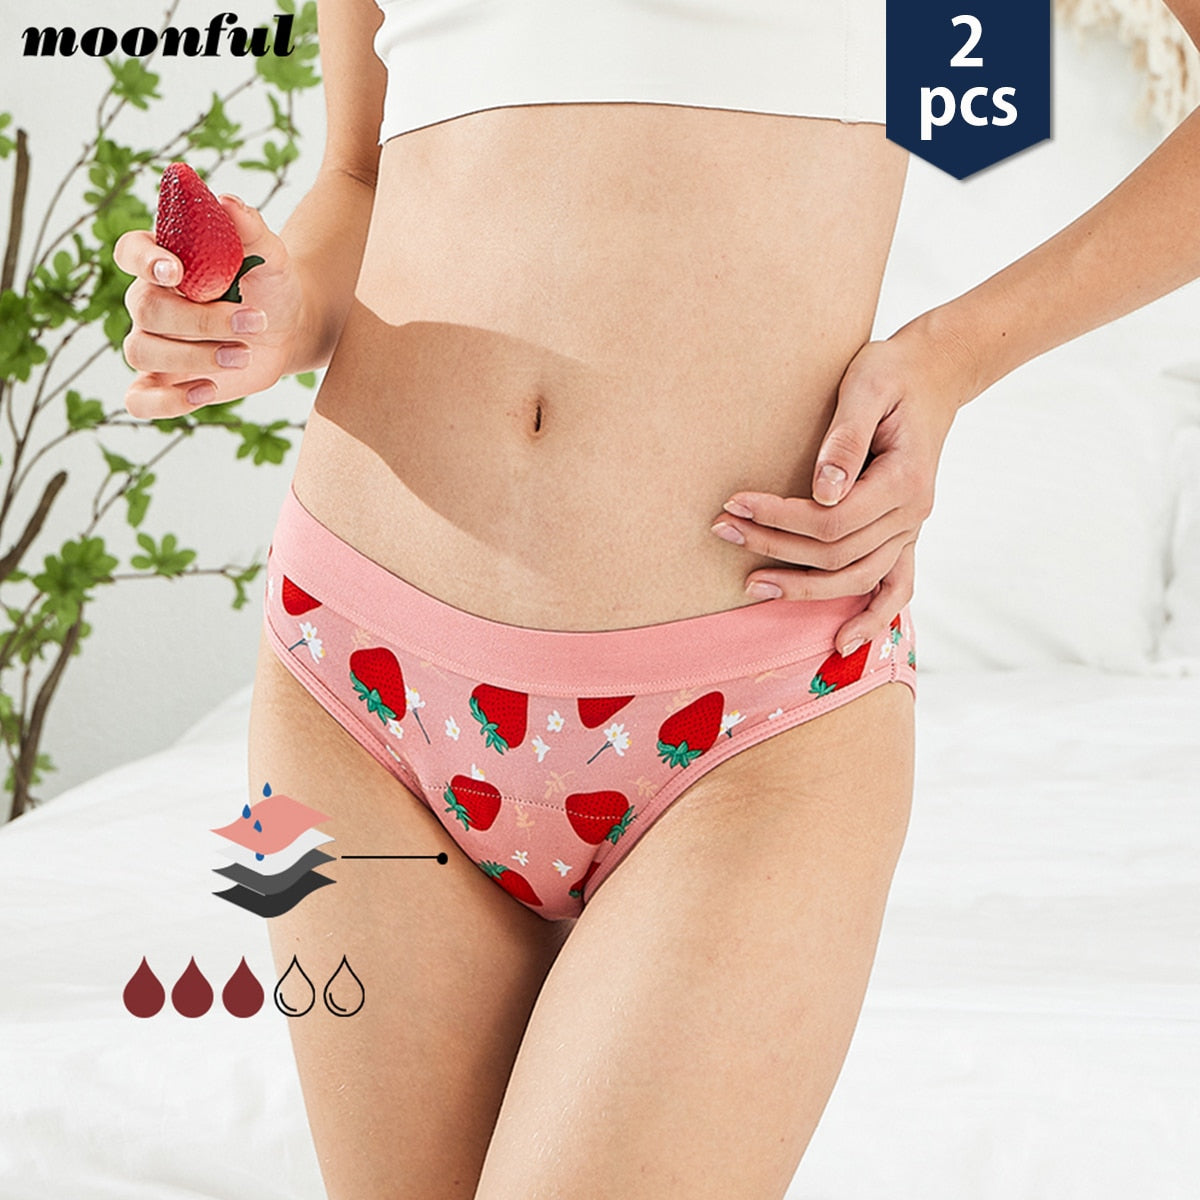 3Pcs Period Panties Seamless for Women Absorbent Menstrual Panties